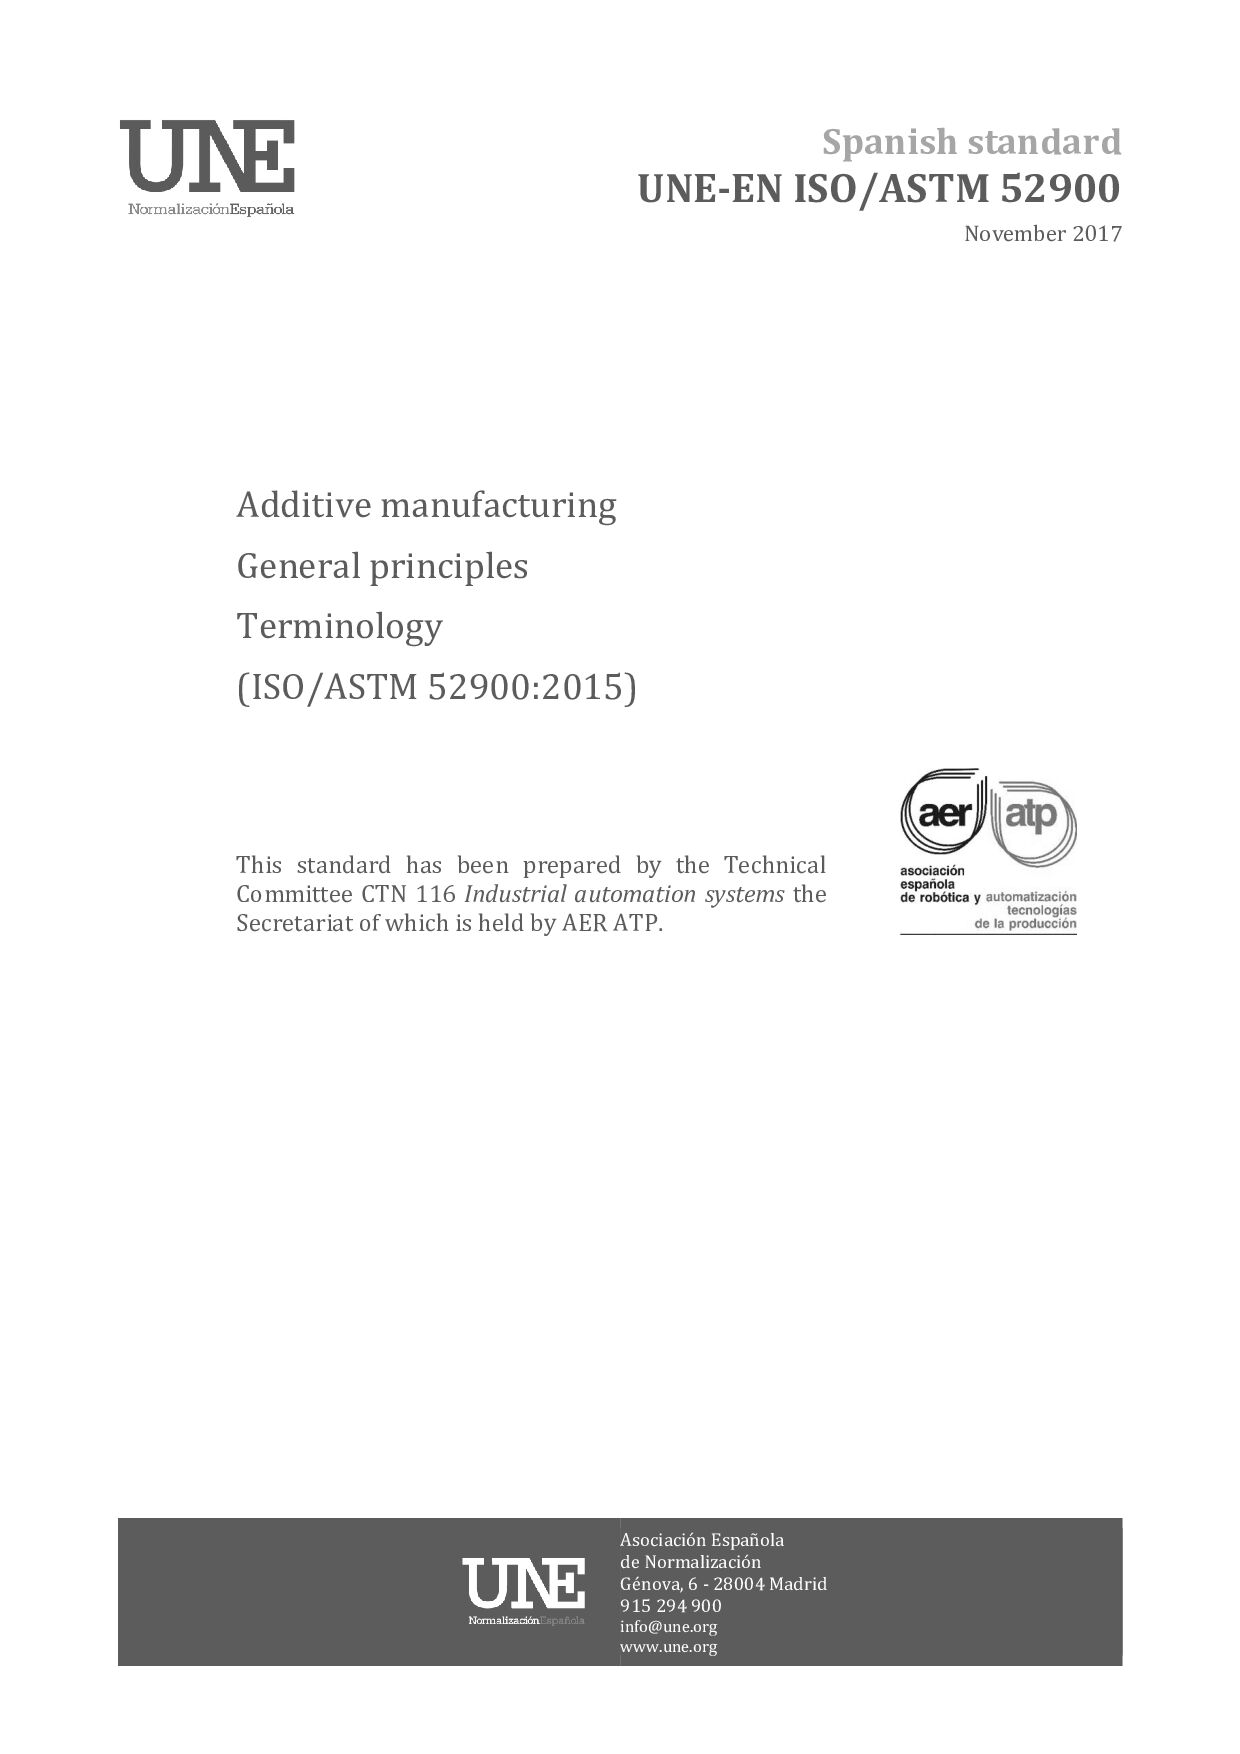 UNE-EN ISO/ASTM 52900:2017